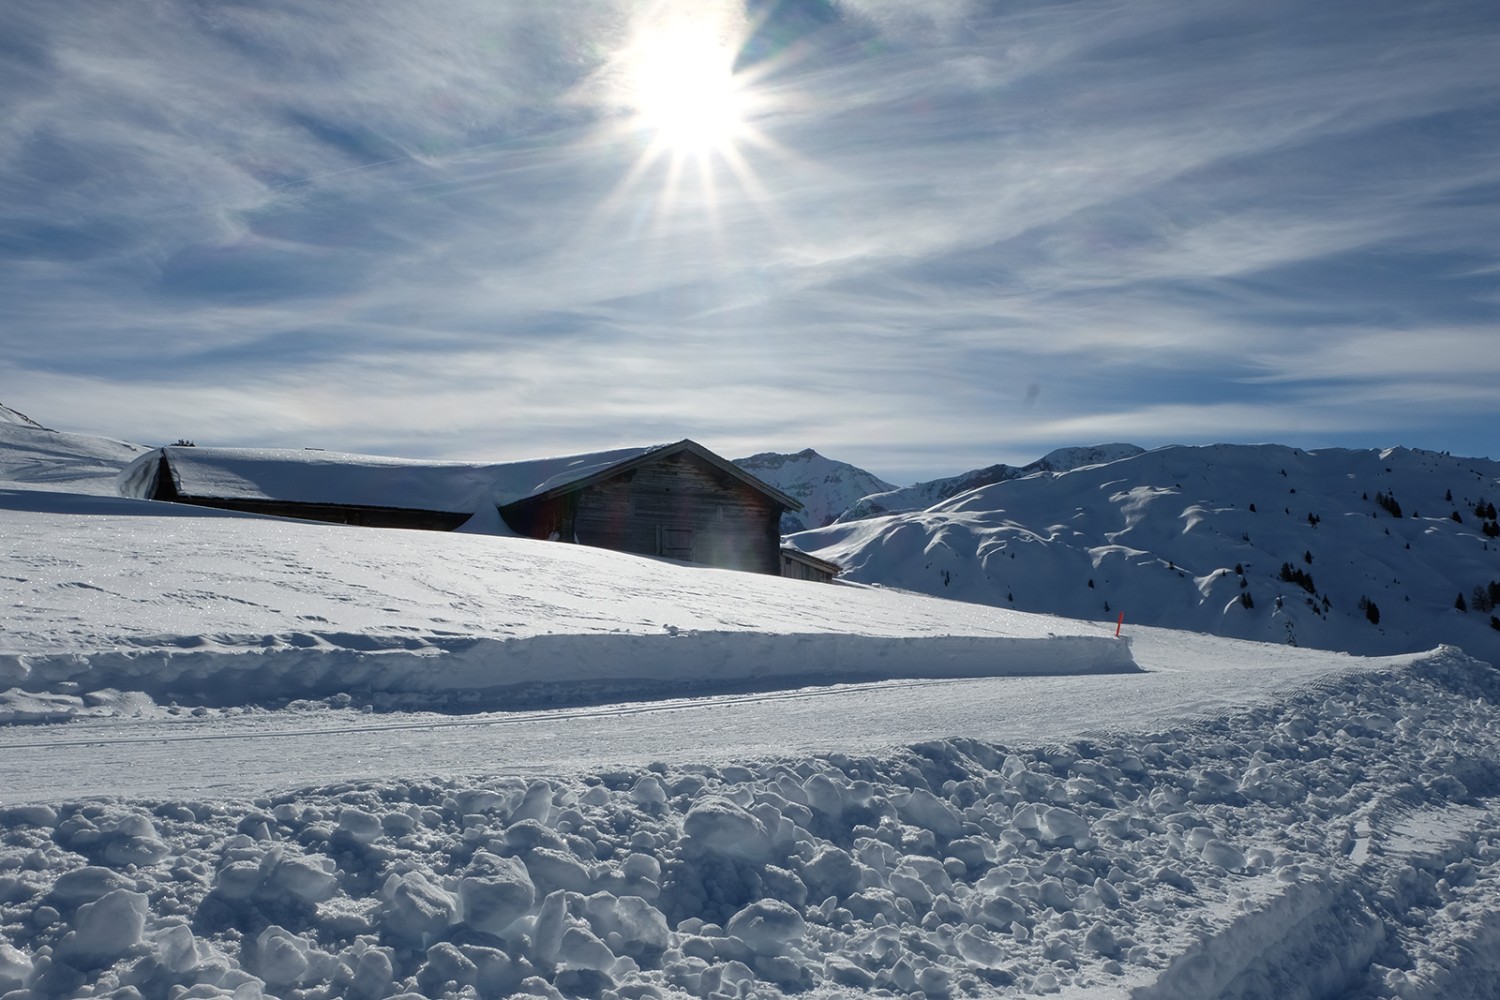 Tief verschneit sind die Alphütten im Winter. Langläufer und Winterwanderer ziehen vorbei.